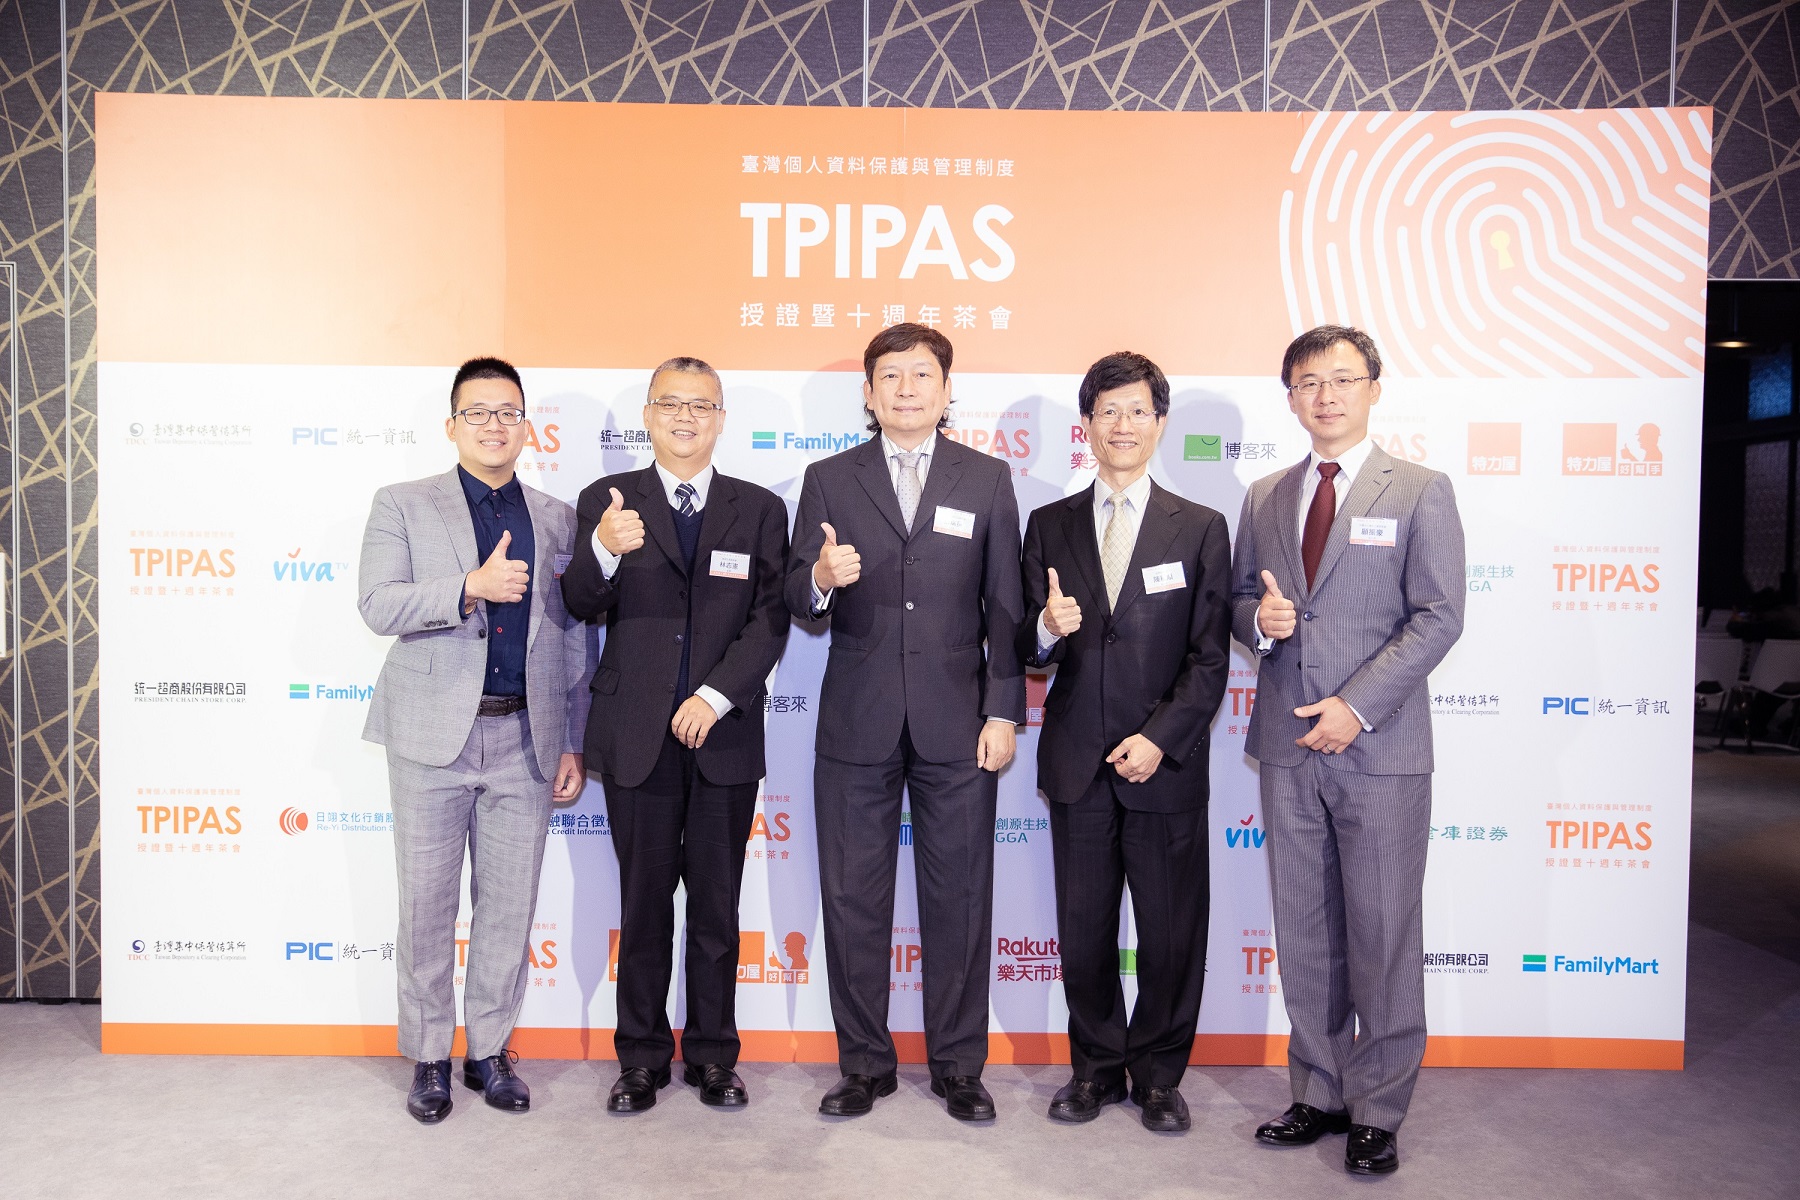 資策會科技法律研究所維運臺灣個人資料保護與管理制度(TPIPAS)，於2019年12月舉辦授證暨十週年茶會